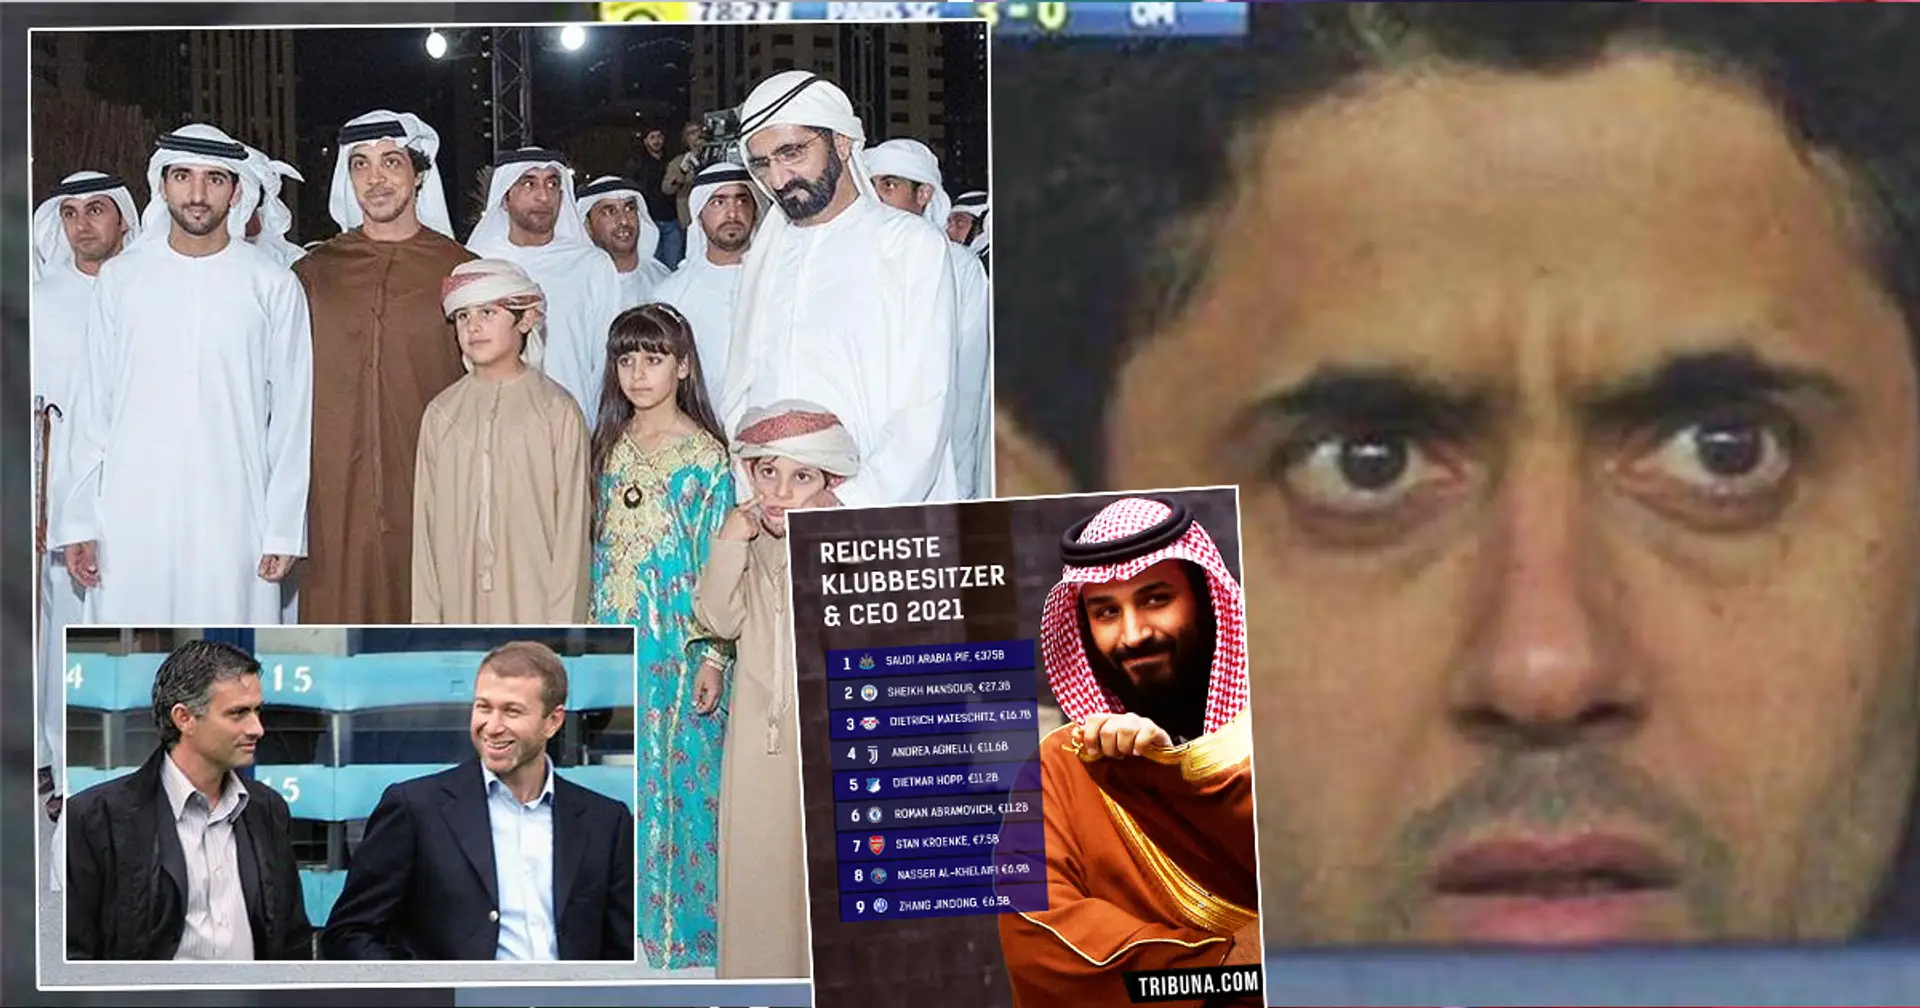 Die reichsten Besitzer und Geschäftsführer europäischer Klubs enthüllt - PSGs Nasser Al-Khelaifi nur auf dem 8. Platz